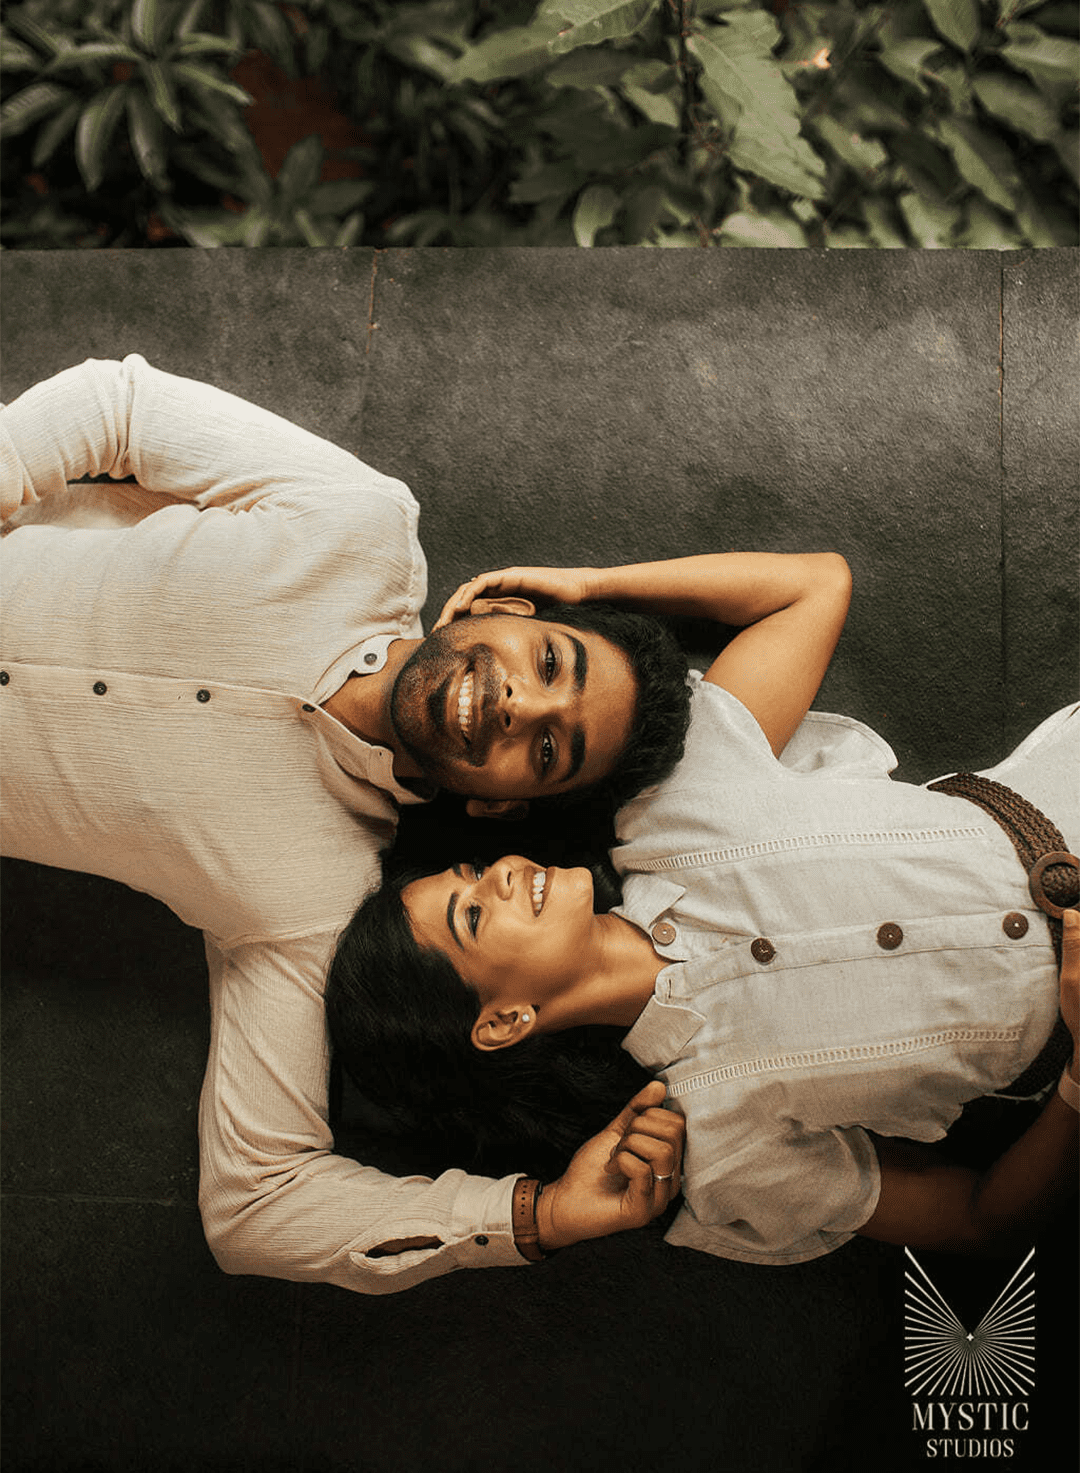 Kerala couple trolled for post-wedding photoshoot - YouTube